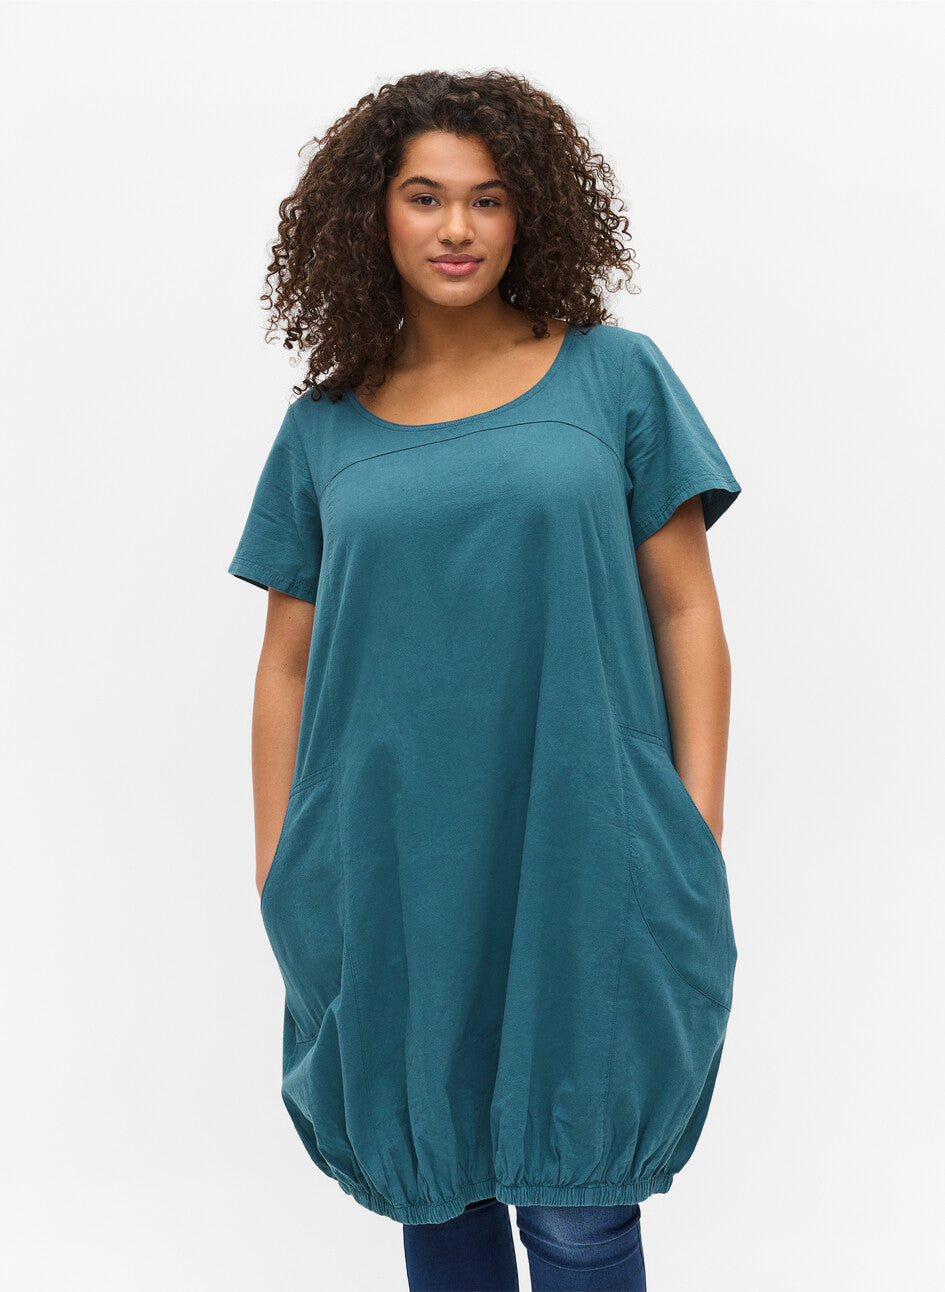 Marrakesh Easy dress